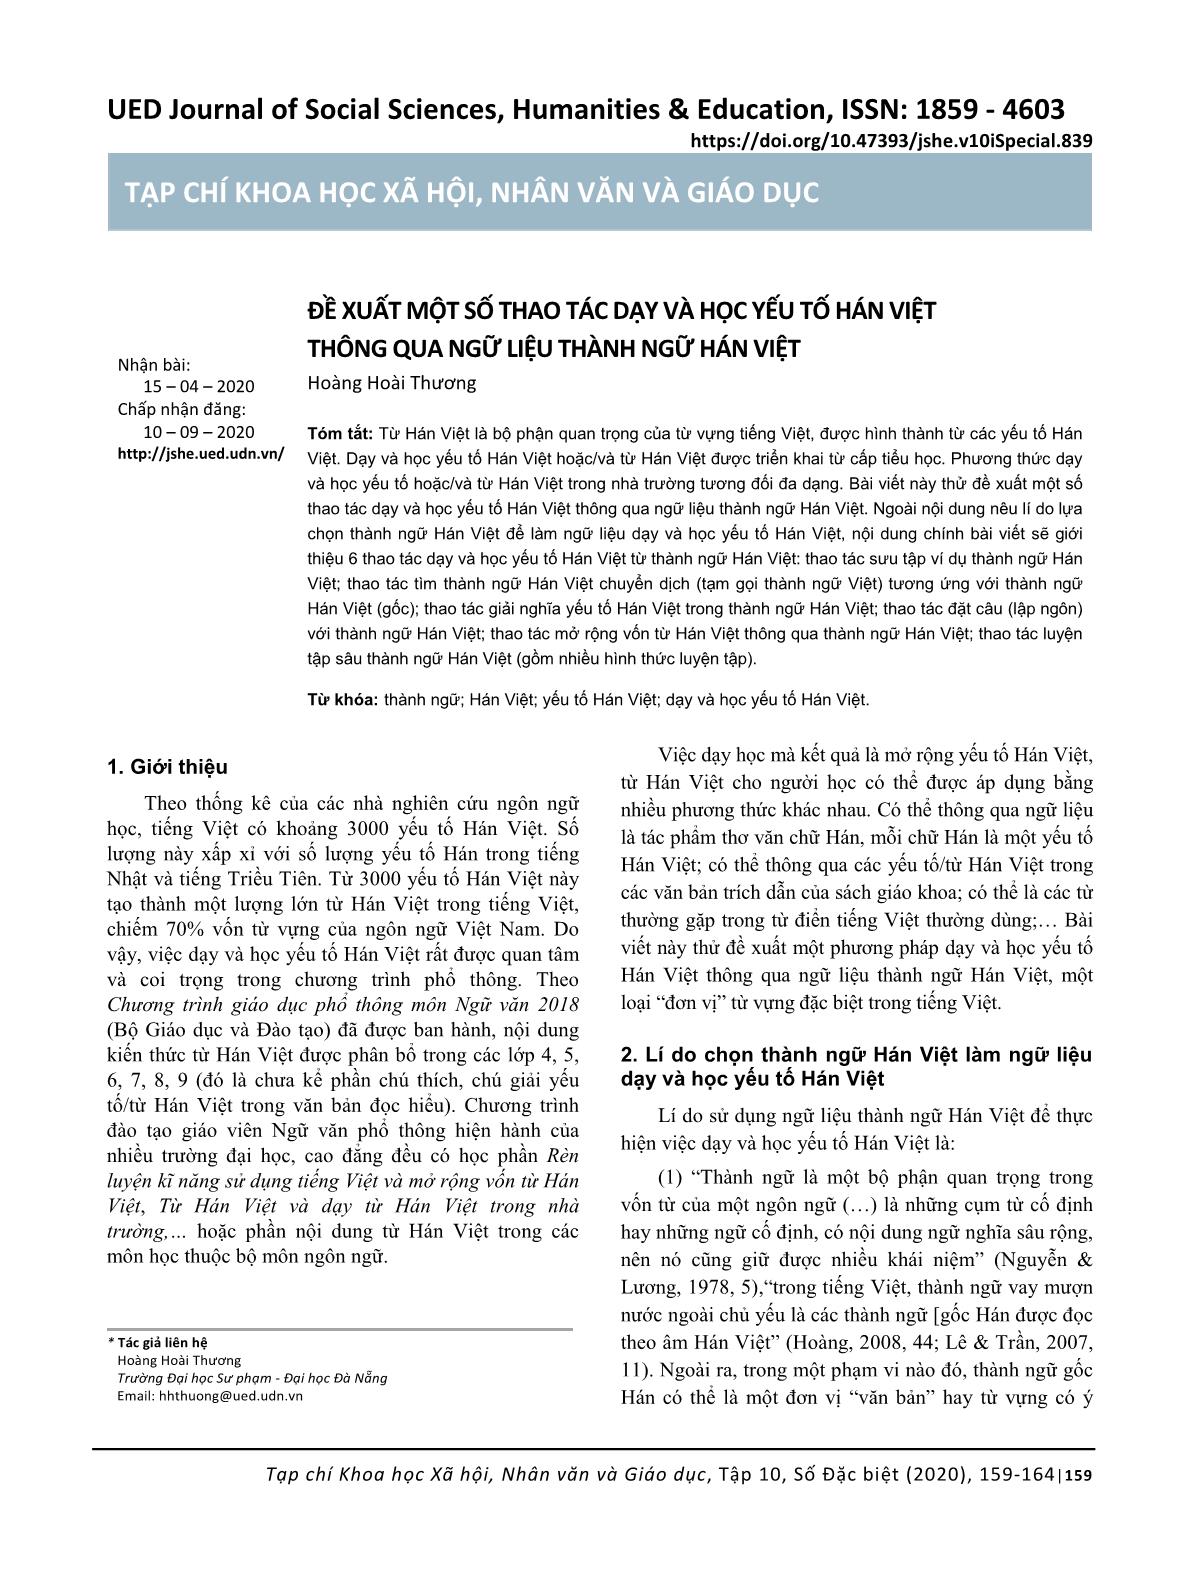 Đề xuất một số thao tác dạy và học yếu tố hán việt thông qua ngữ liệu thành ngữ Hán Việt trang 1